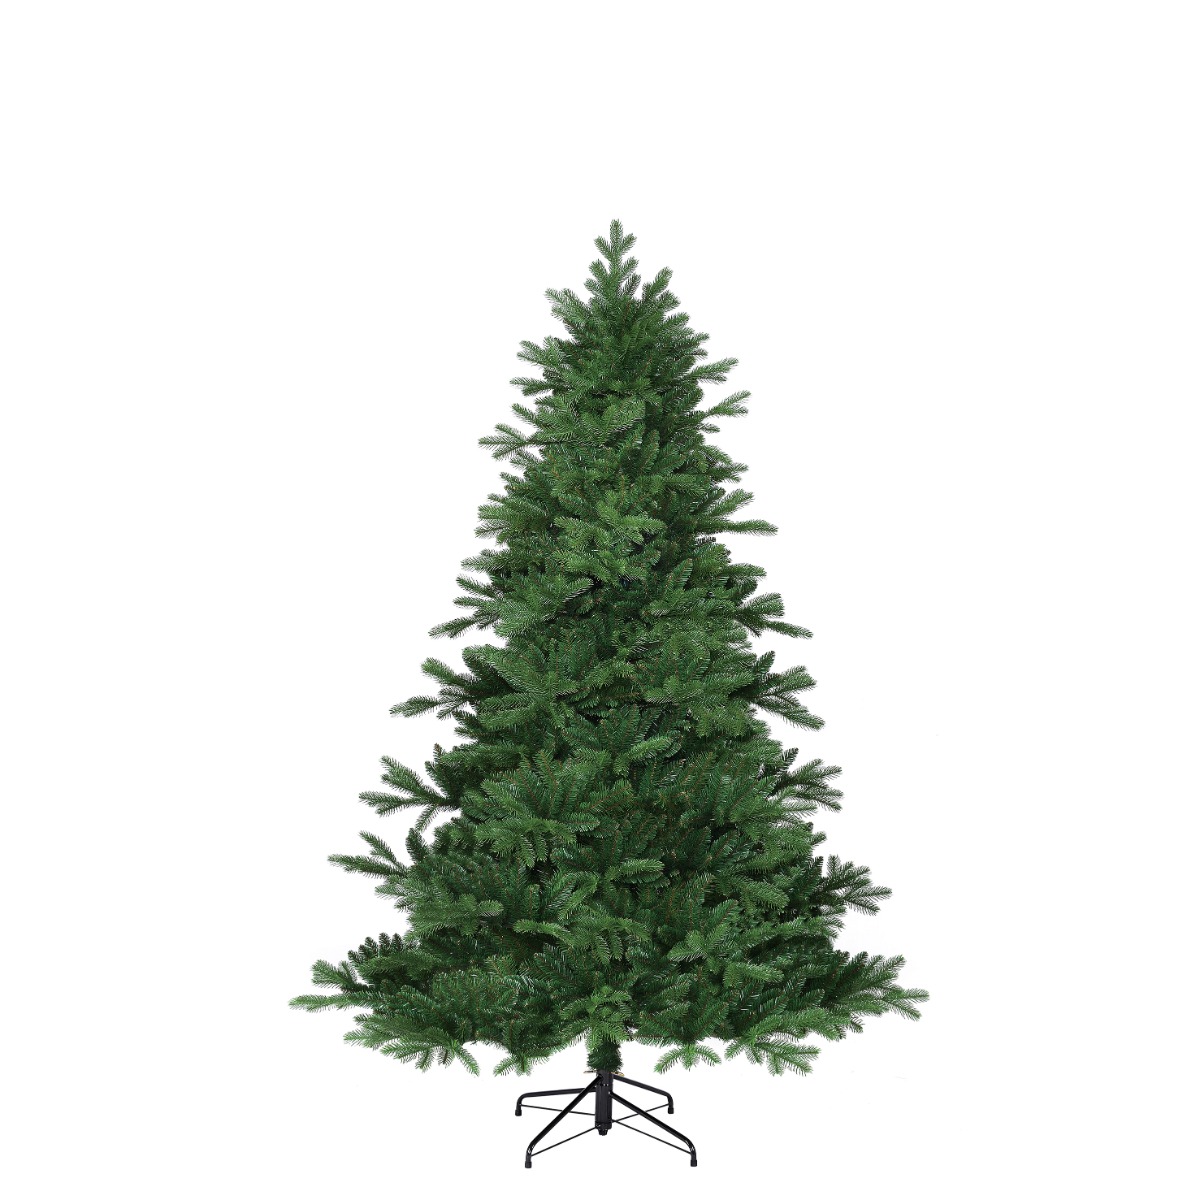 Brampton kunstigt juletræ 185 cm højt